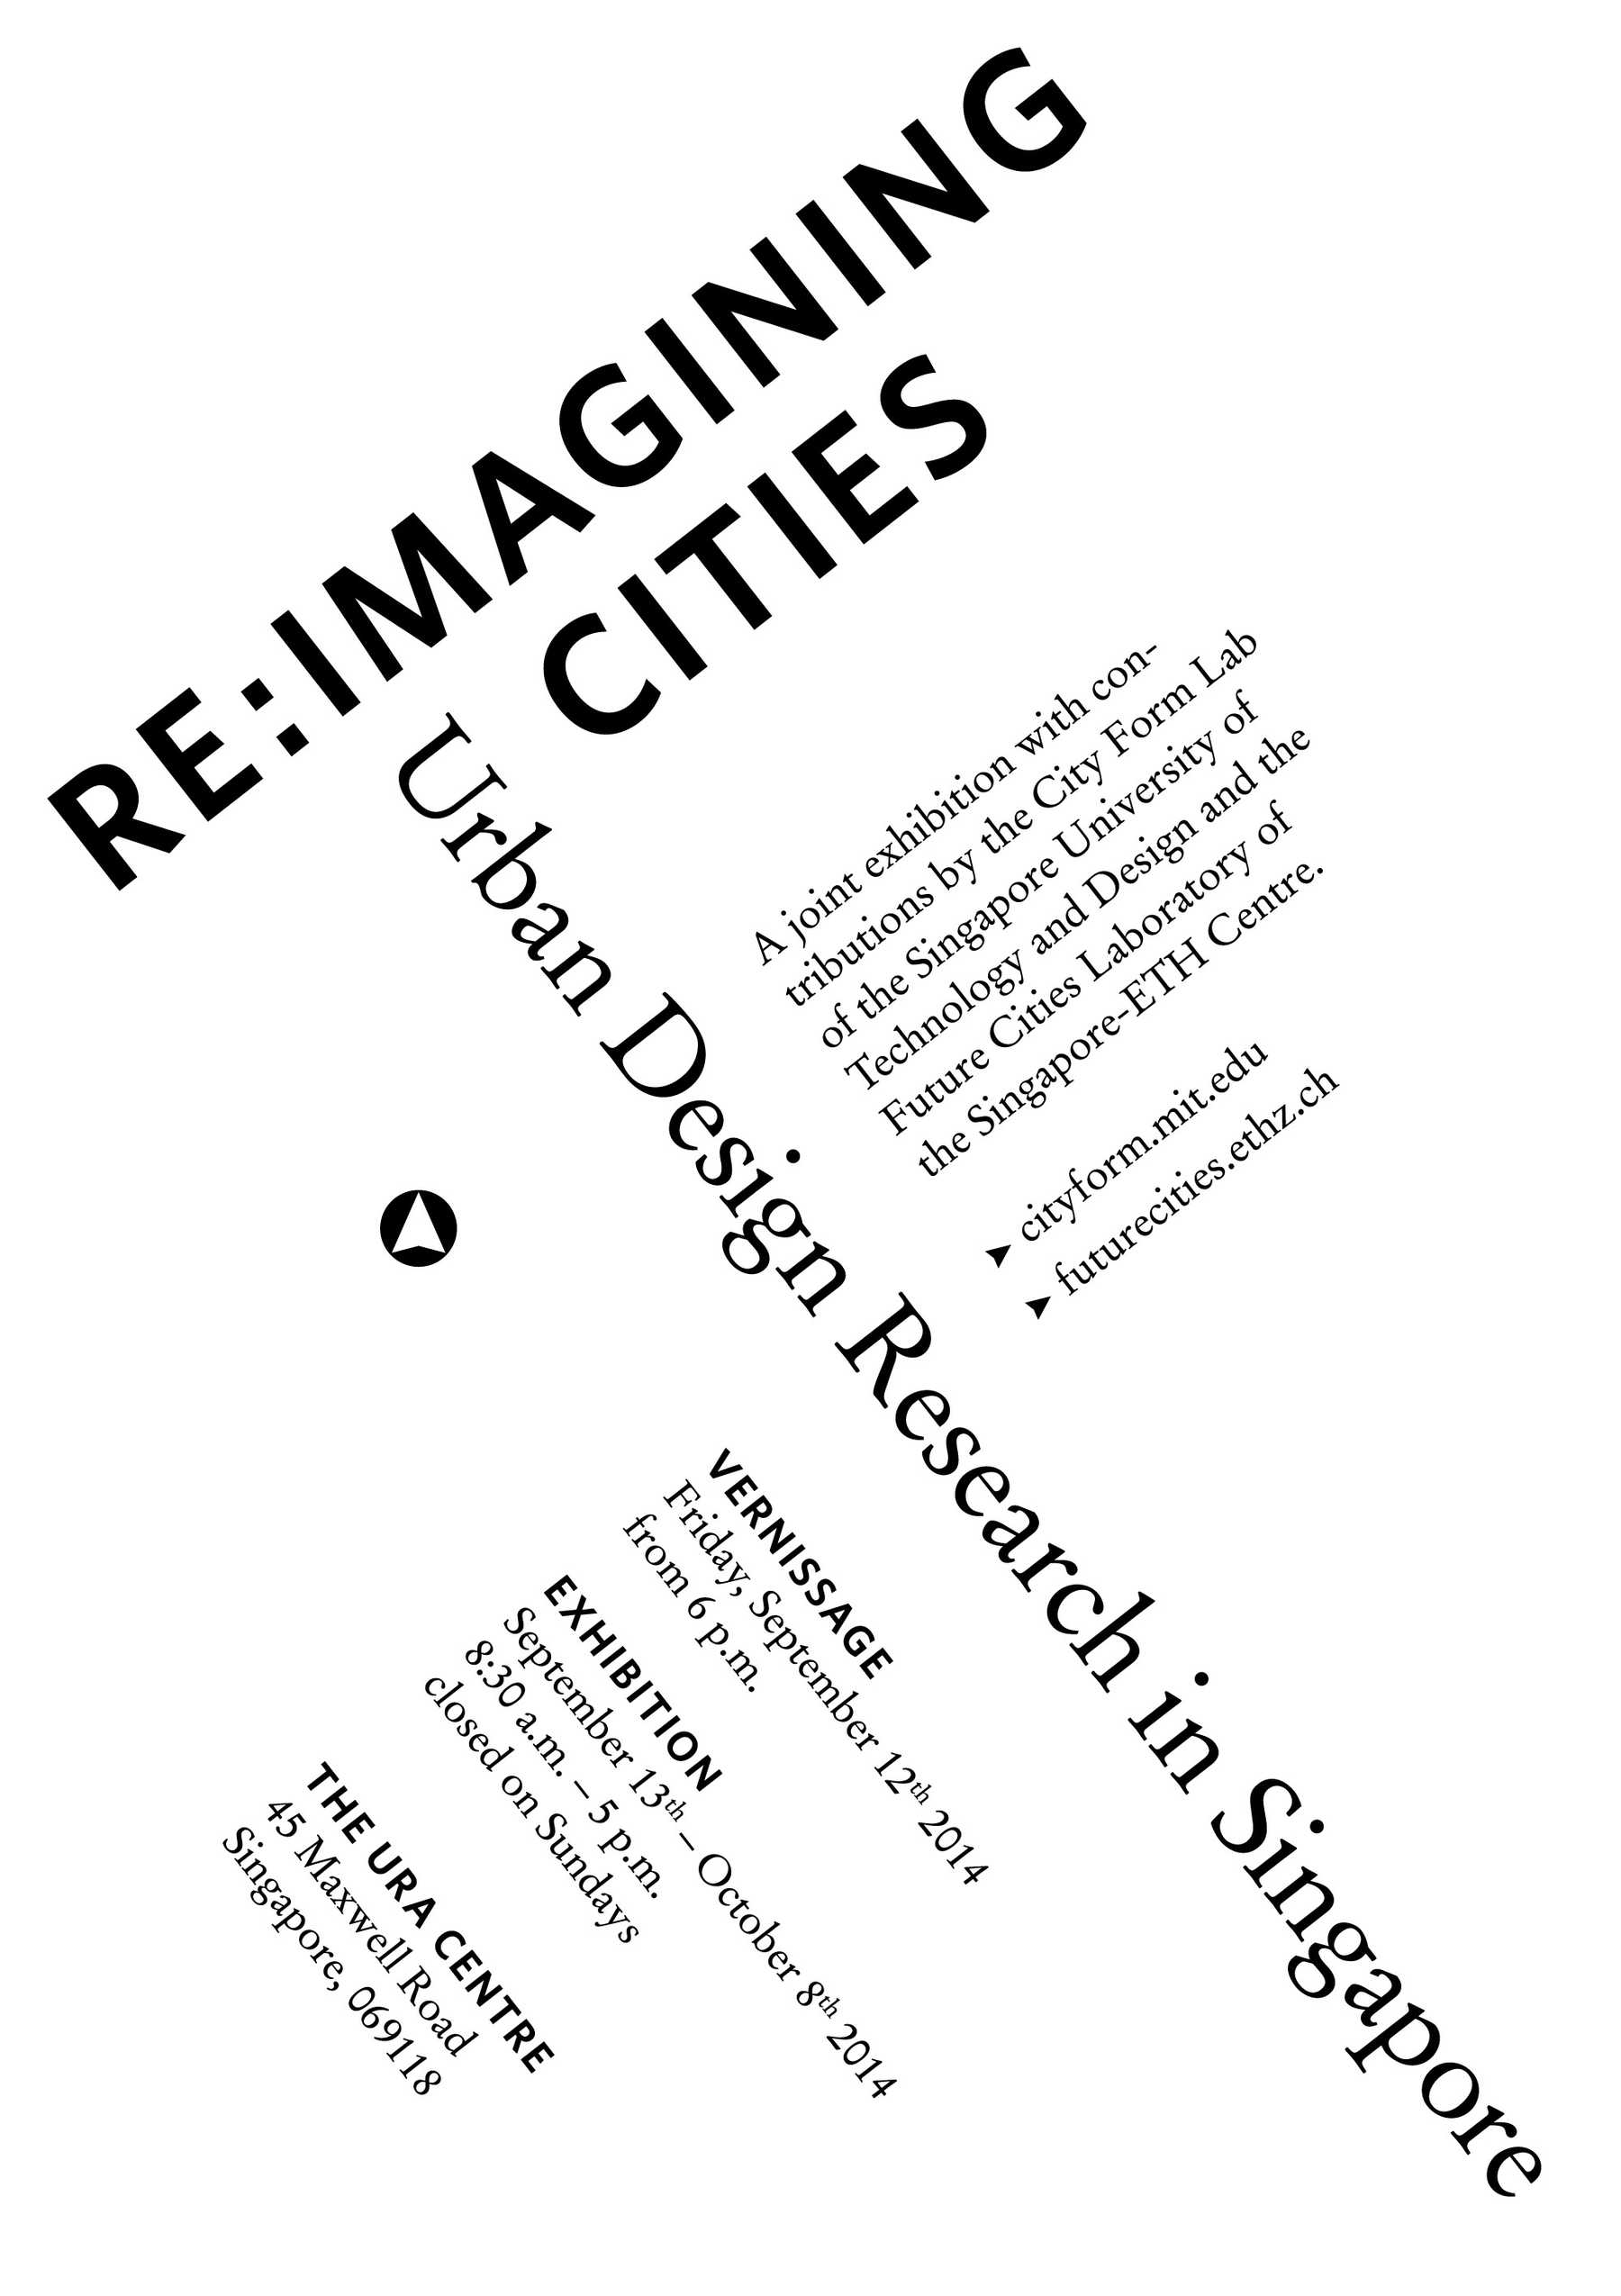 Re:Imagining Cities Flyer